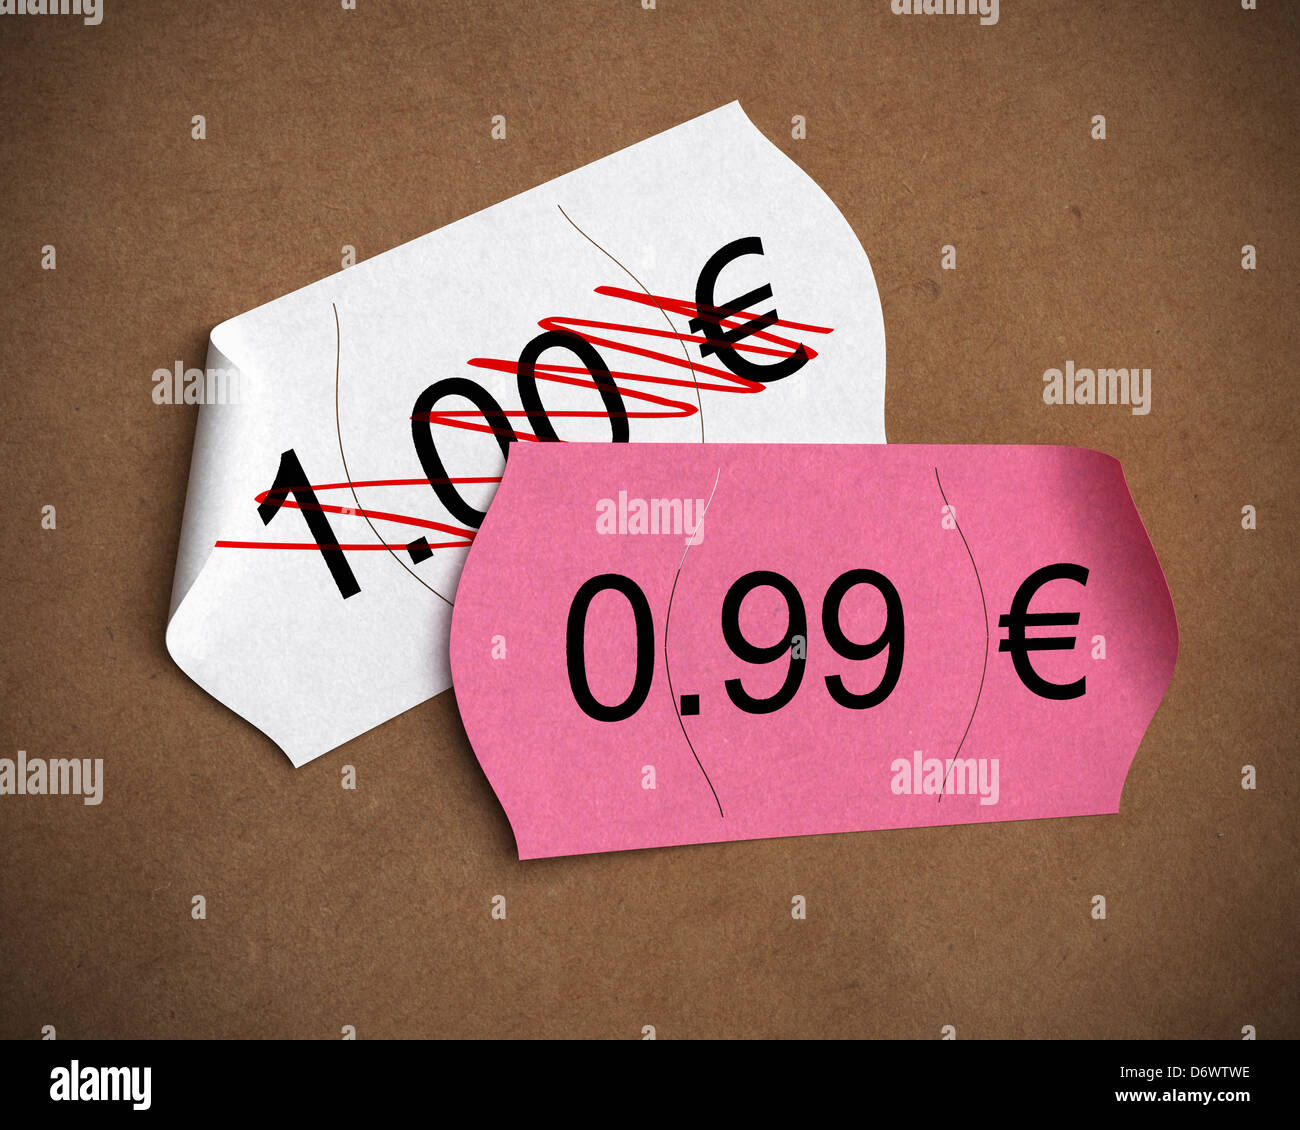 0,99 € prezzo psicologico scritto su una etichetta di rosa su un altro dove è scritto 1,00 euro, marrone carta kraft sfondo Foto Stock